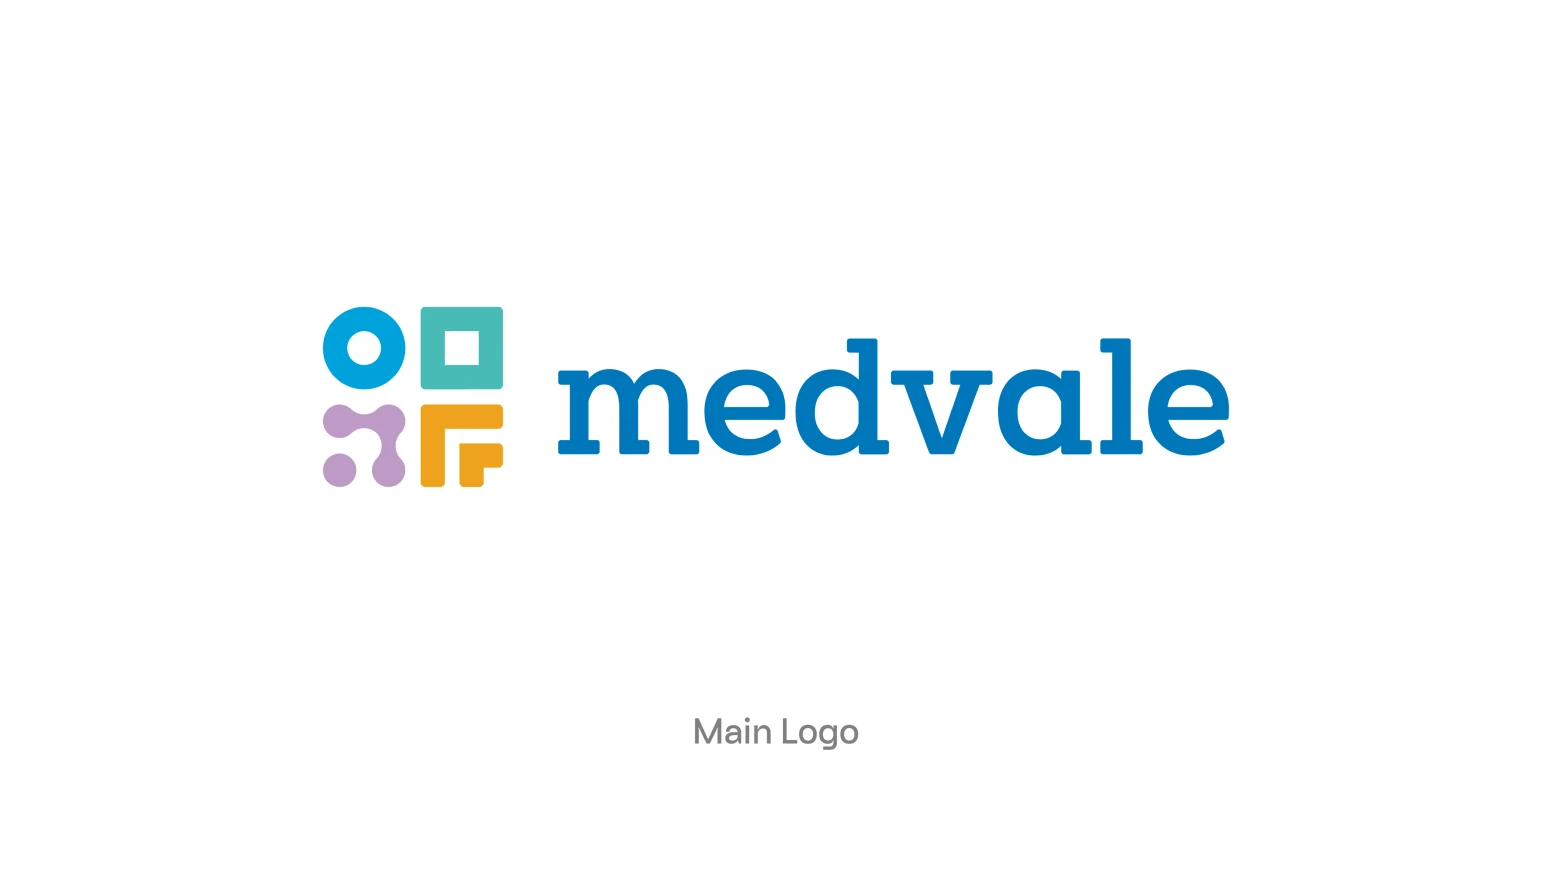 Medvale Main Logo